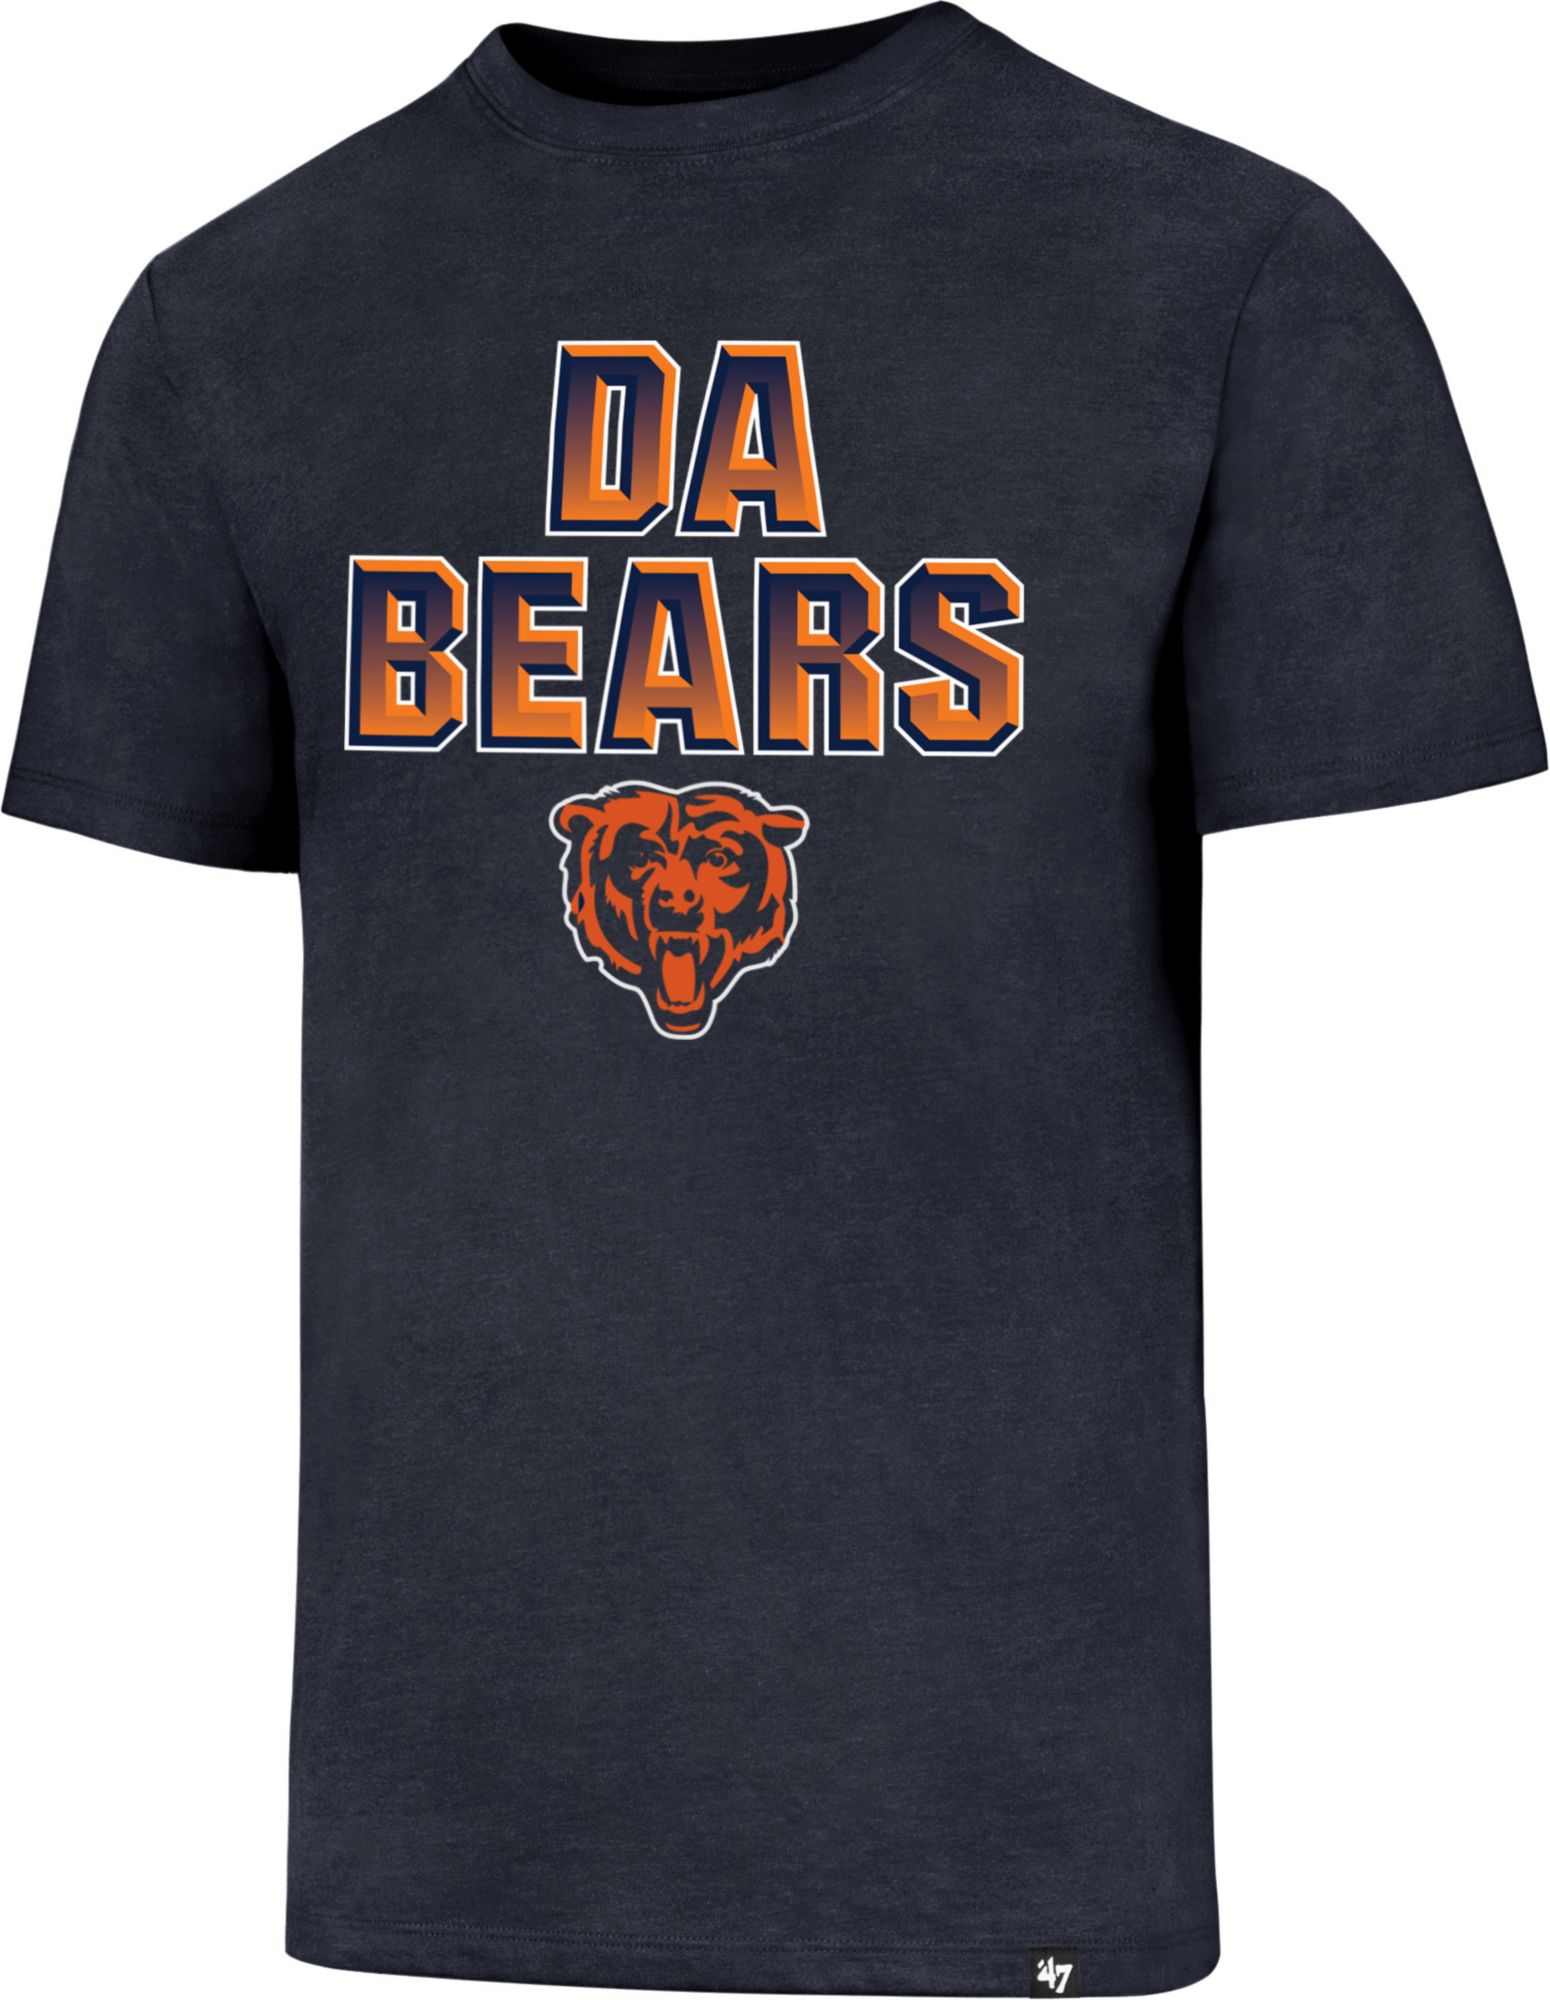 nike da bears shirt